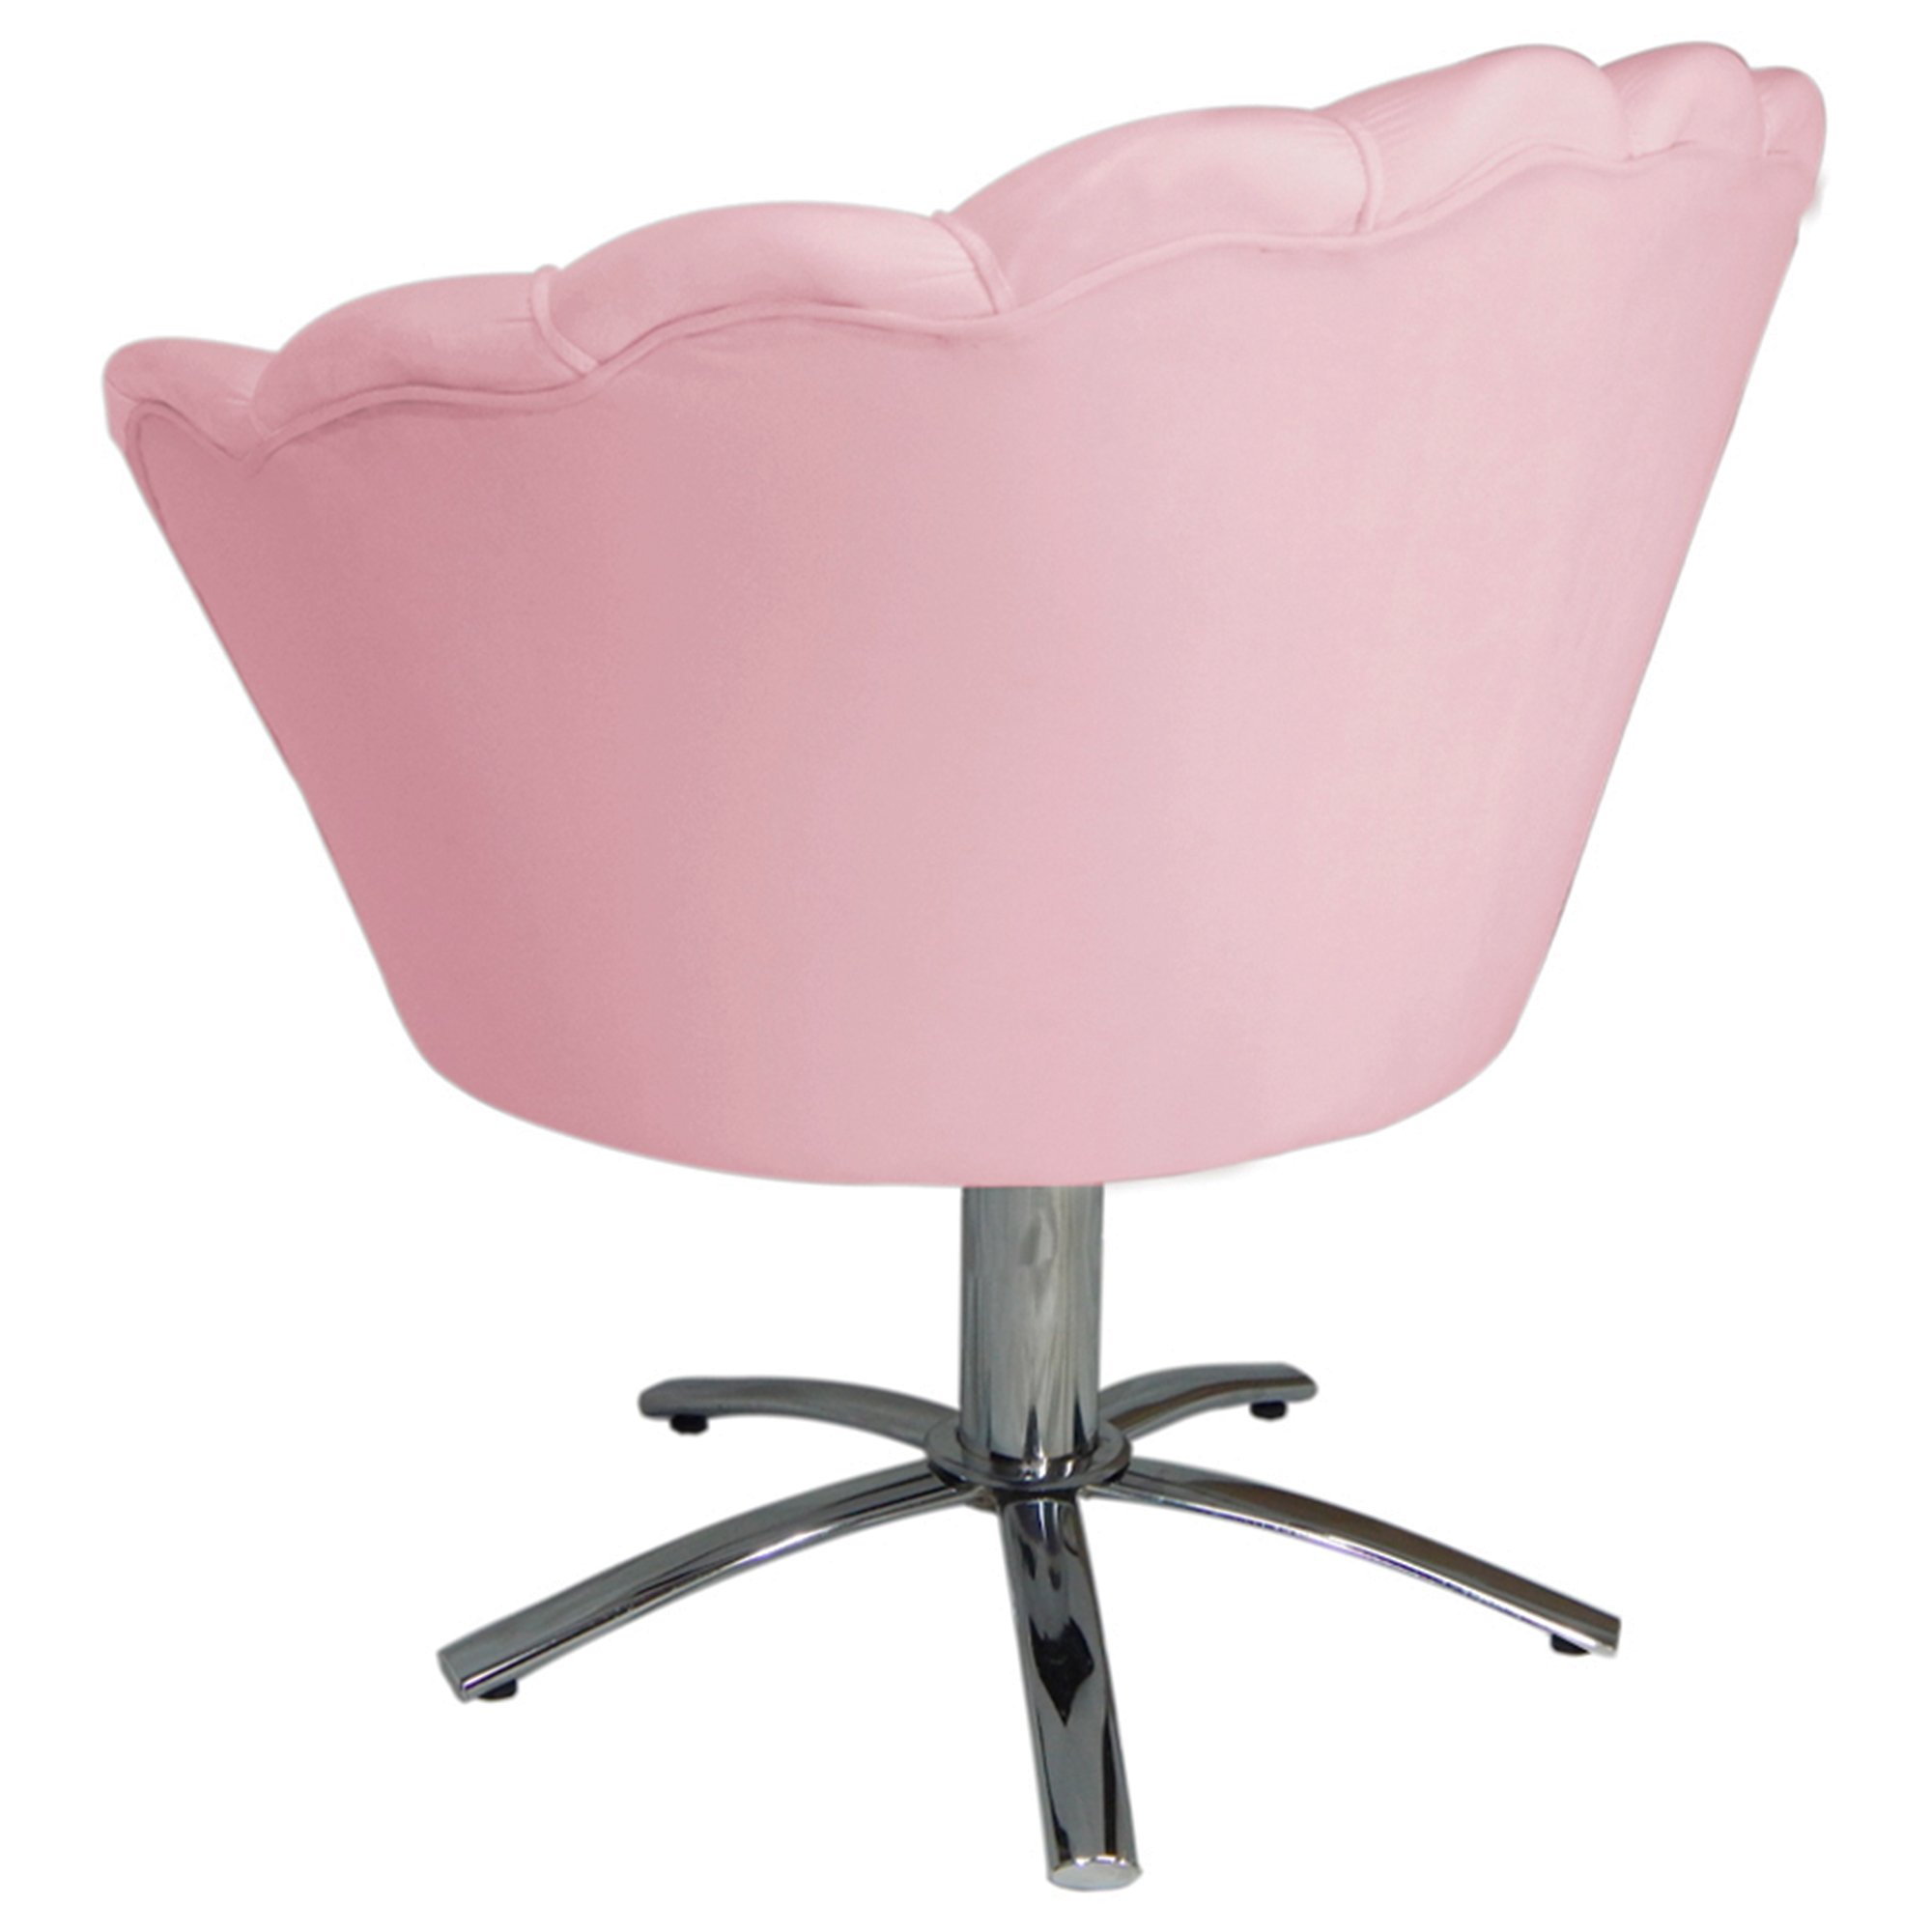 Poltrona Cadeira com Base Giratoria Cromado Pétala Suede Rosa Bêbê - 3